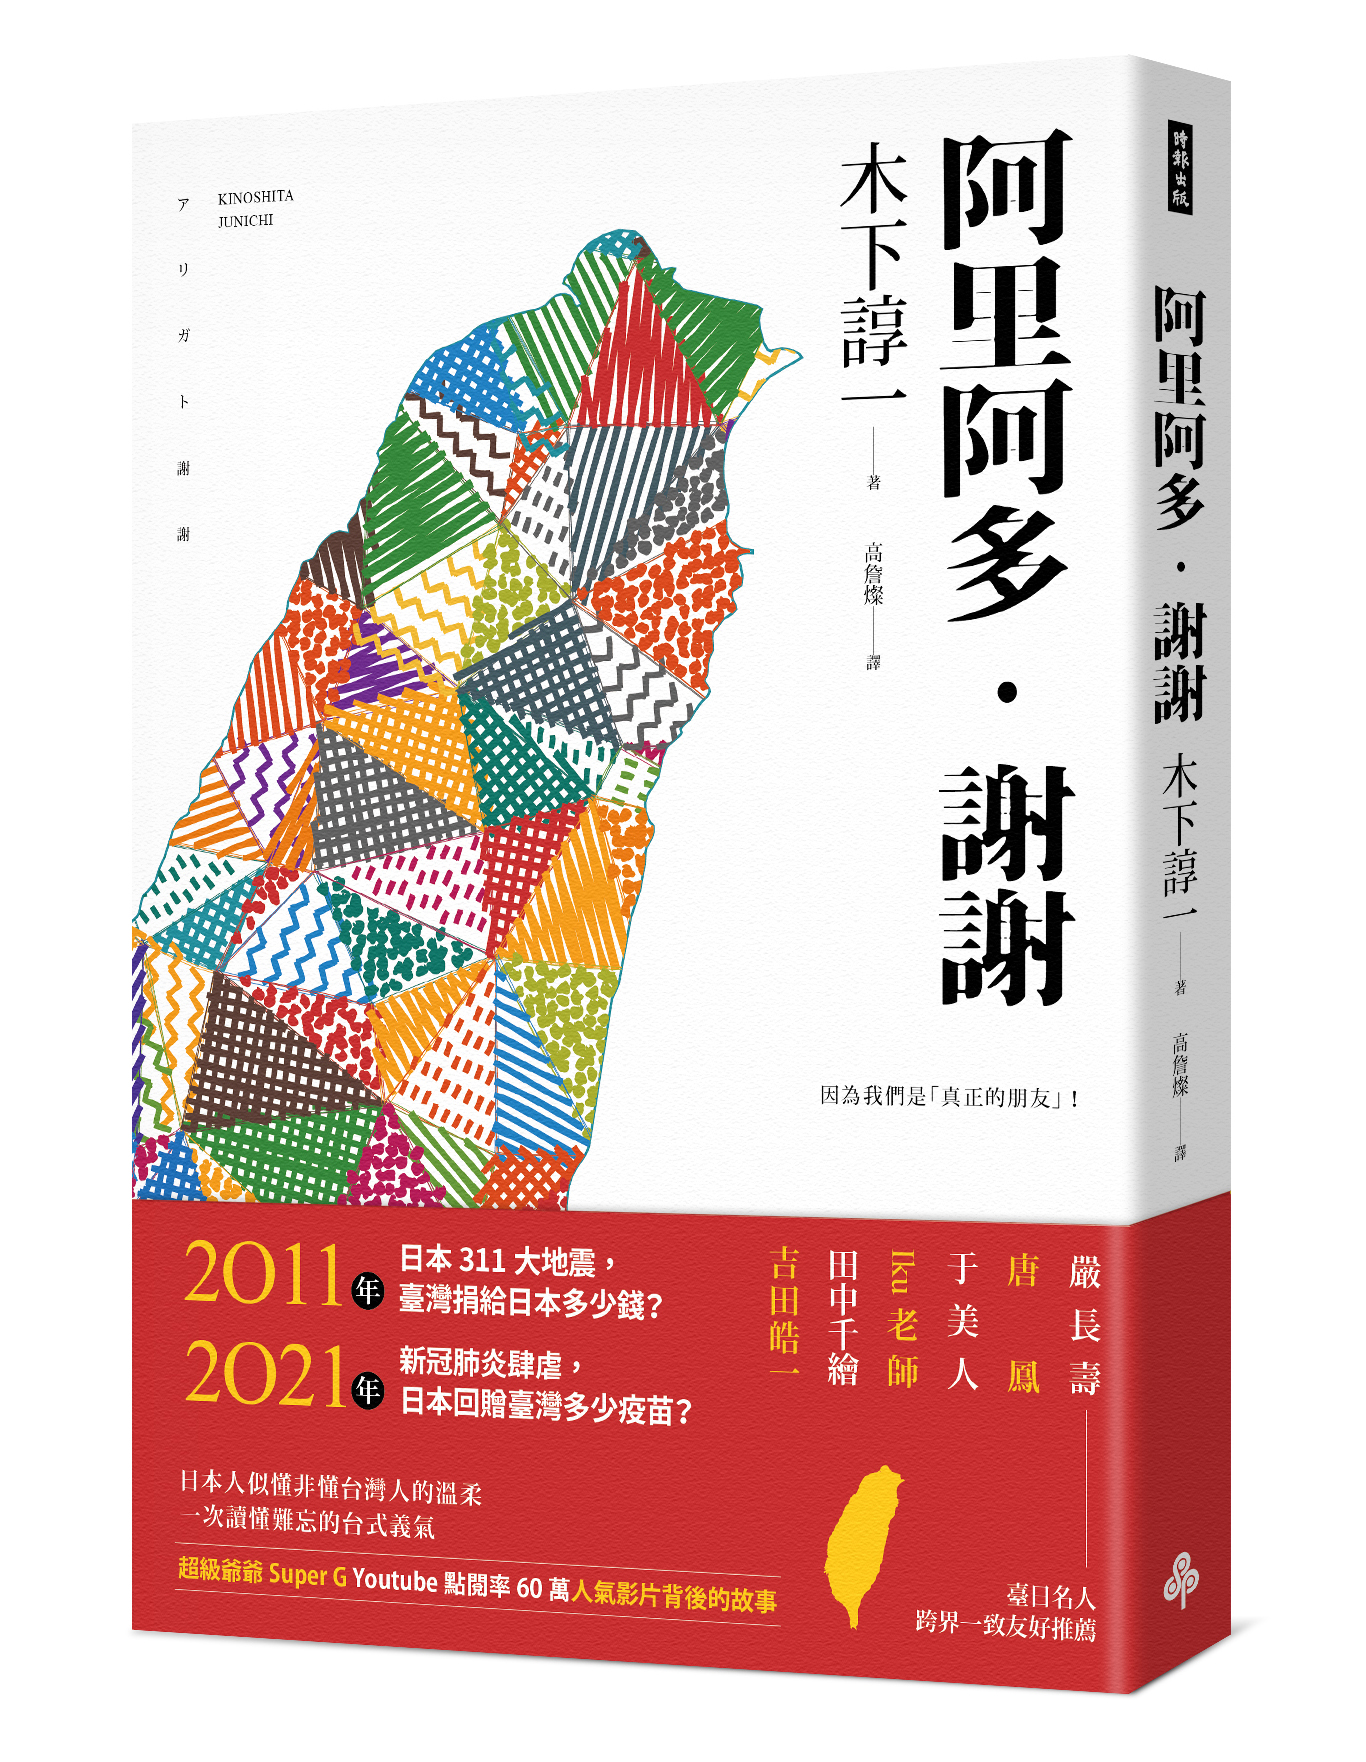 Năm 2017, nhà văn Kinoshita Junich có xuất bản một cuốn sách có tựa đề tiếng tiếng Hoa là “阿里阿多‧謝謝” nhằm giúp người dân Nhật Bản hiểu hơn về sự quan tâm và tấm lòng tương thân tương ái của Đài Loan trước thảm họa kép động đất - sóng thần ở Tōhoku vào ngày 11/3/2011. (Nguồn ảnh: Nhân vật cung cấp)